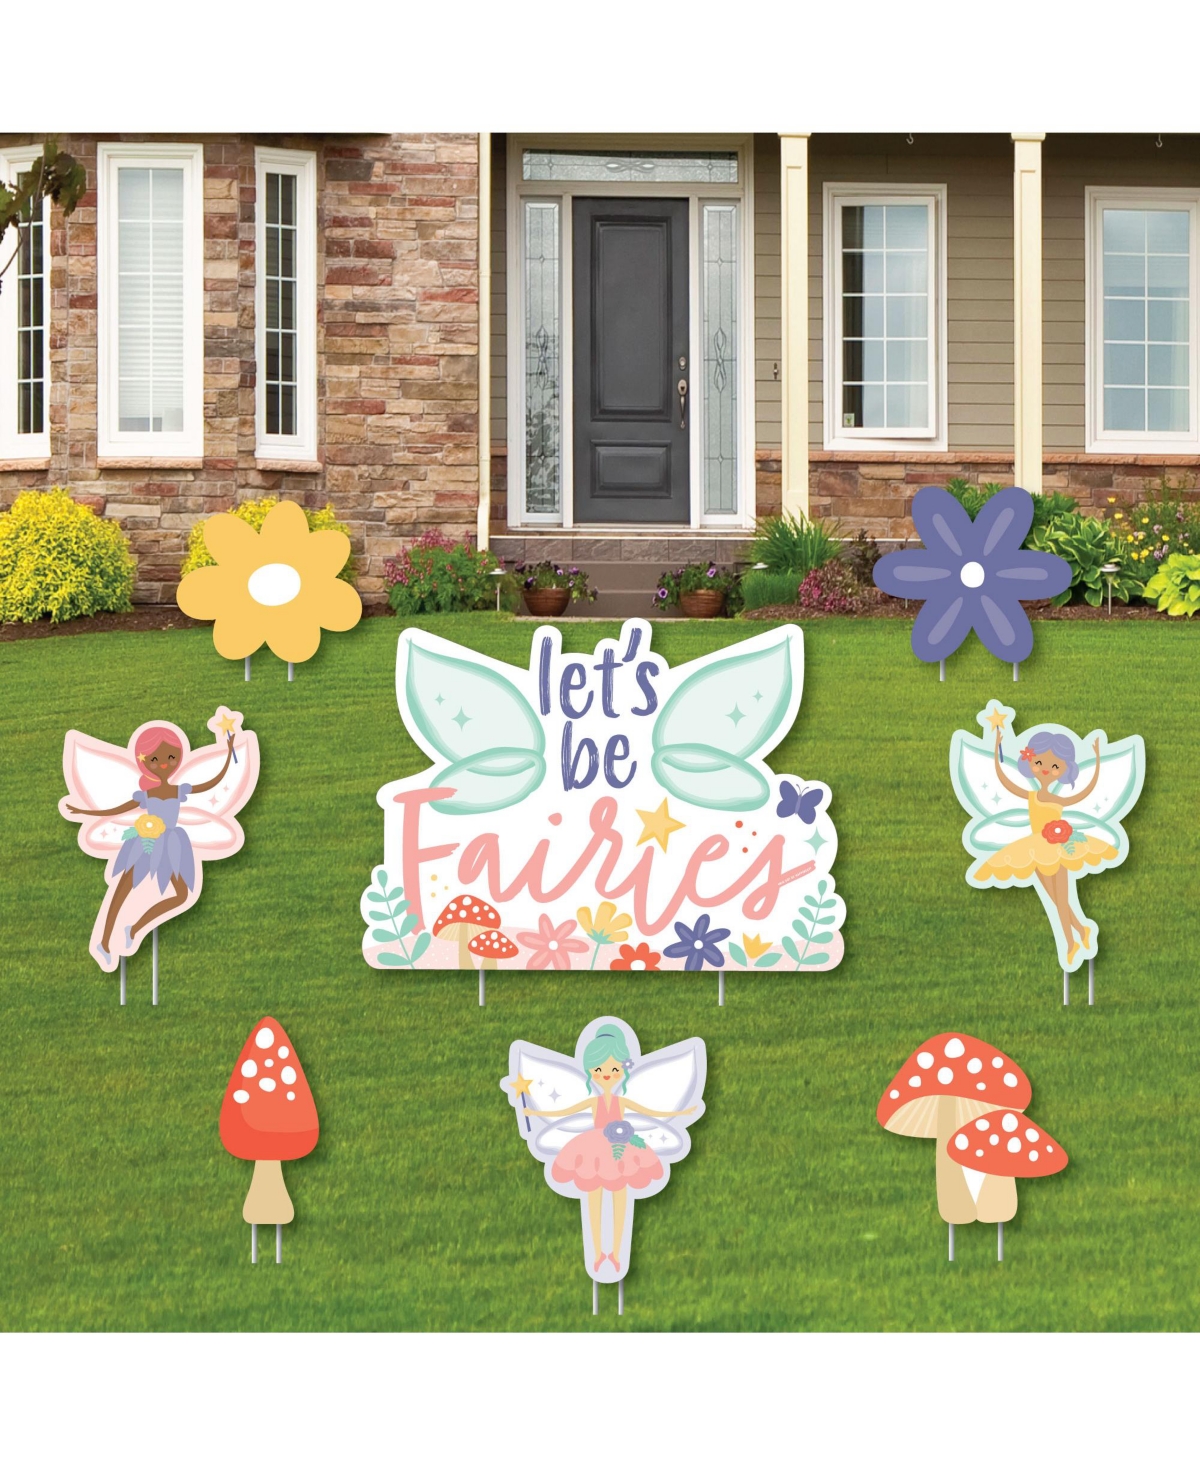 15245492 Lets Be Fairies Outdoor Lawn Decor Fairy Garden Bi sku 15245492